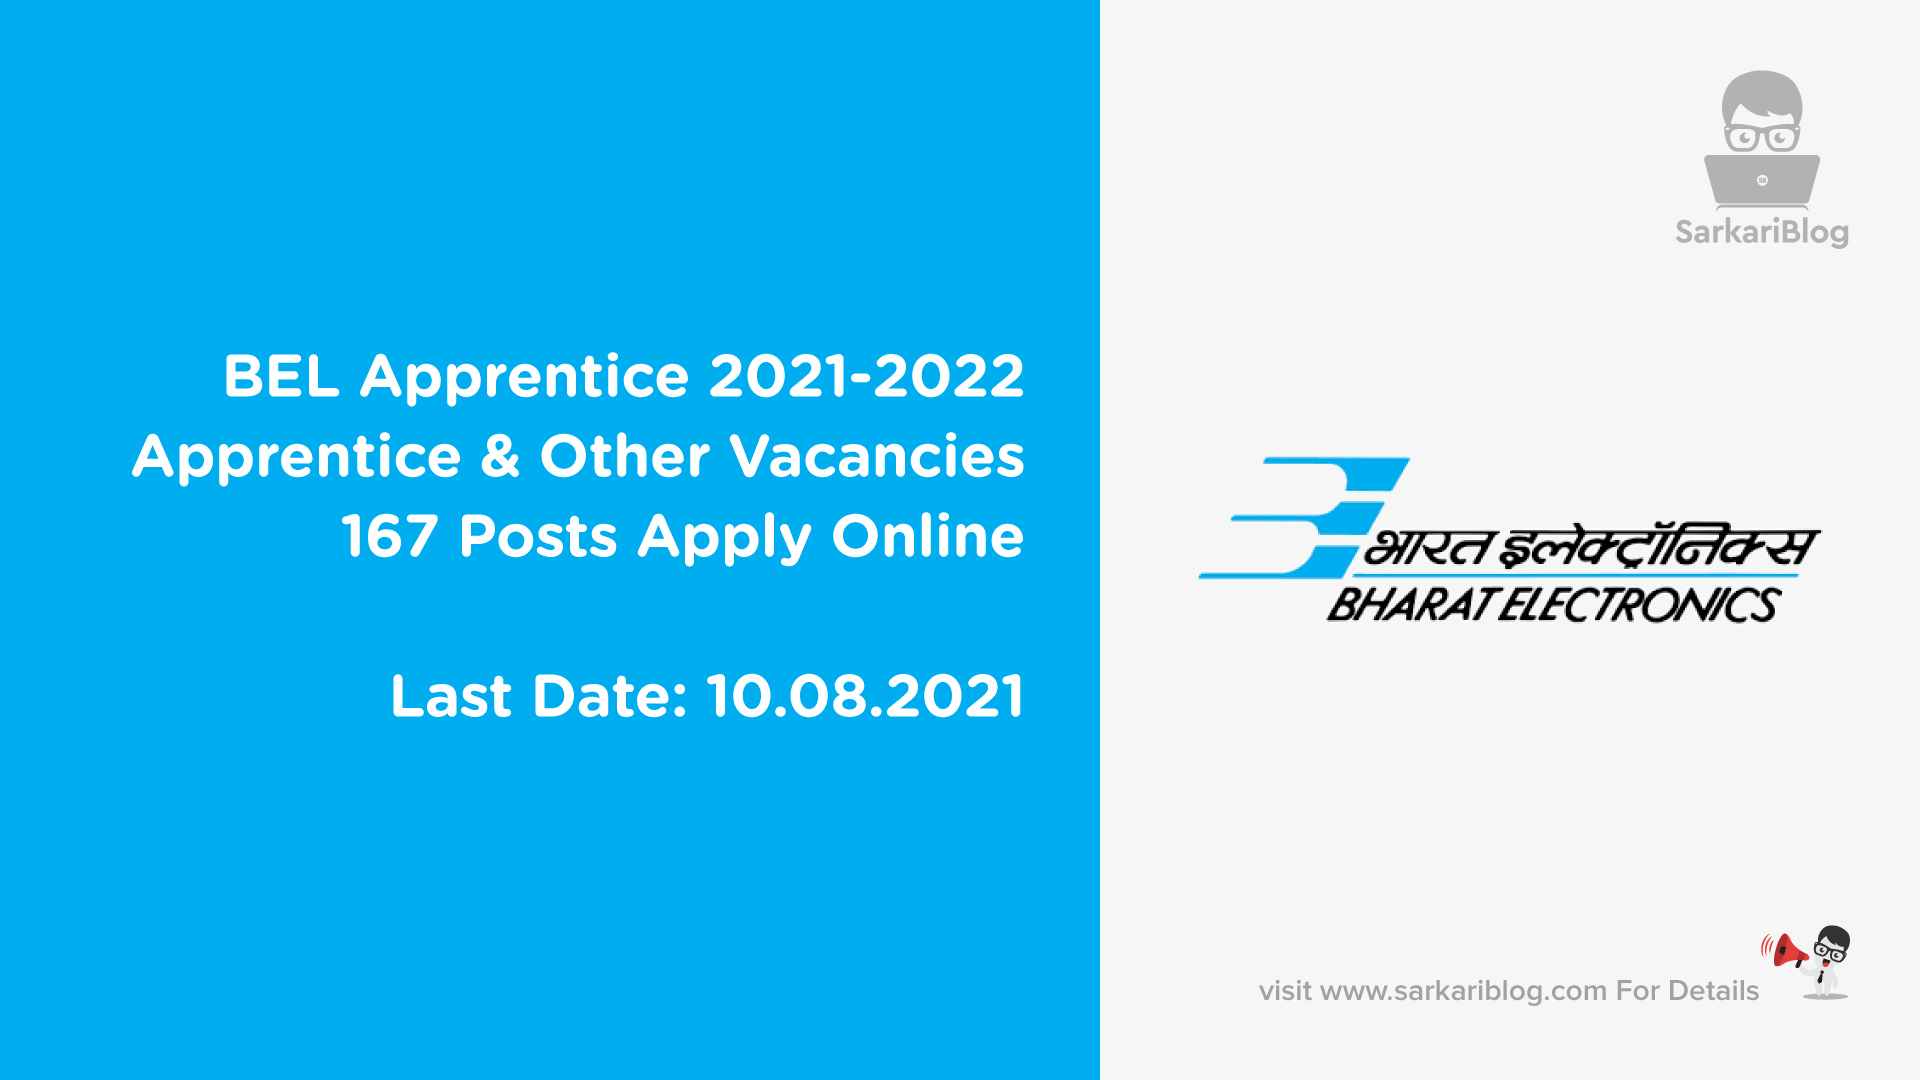 BEL Apprentice 2021-2022, Apprentice & Other Vacancies, 167 Posts Apply Online